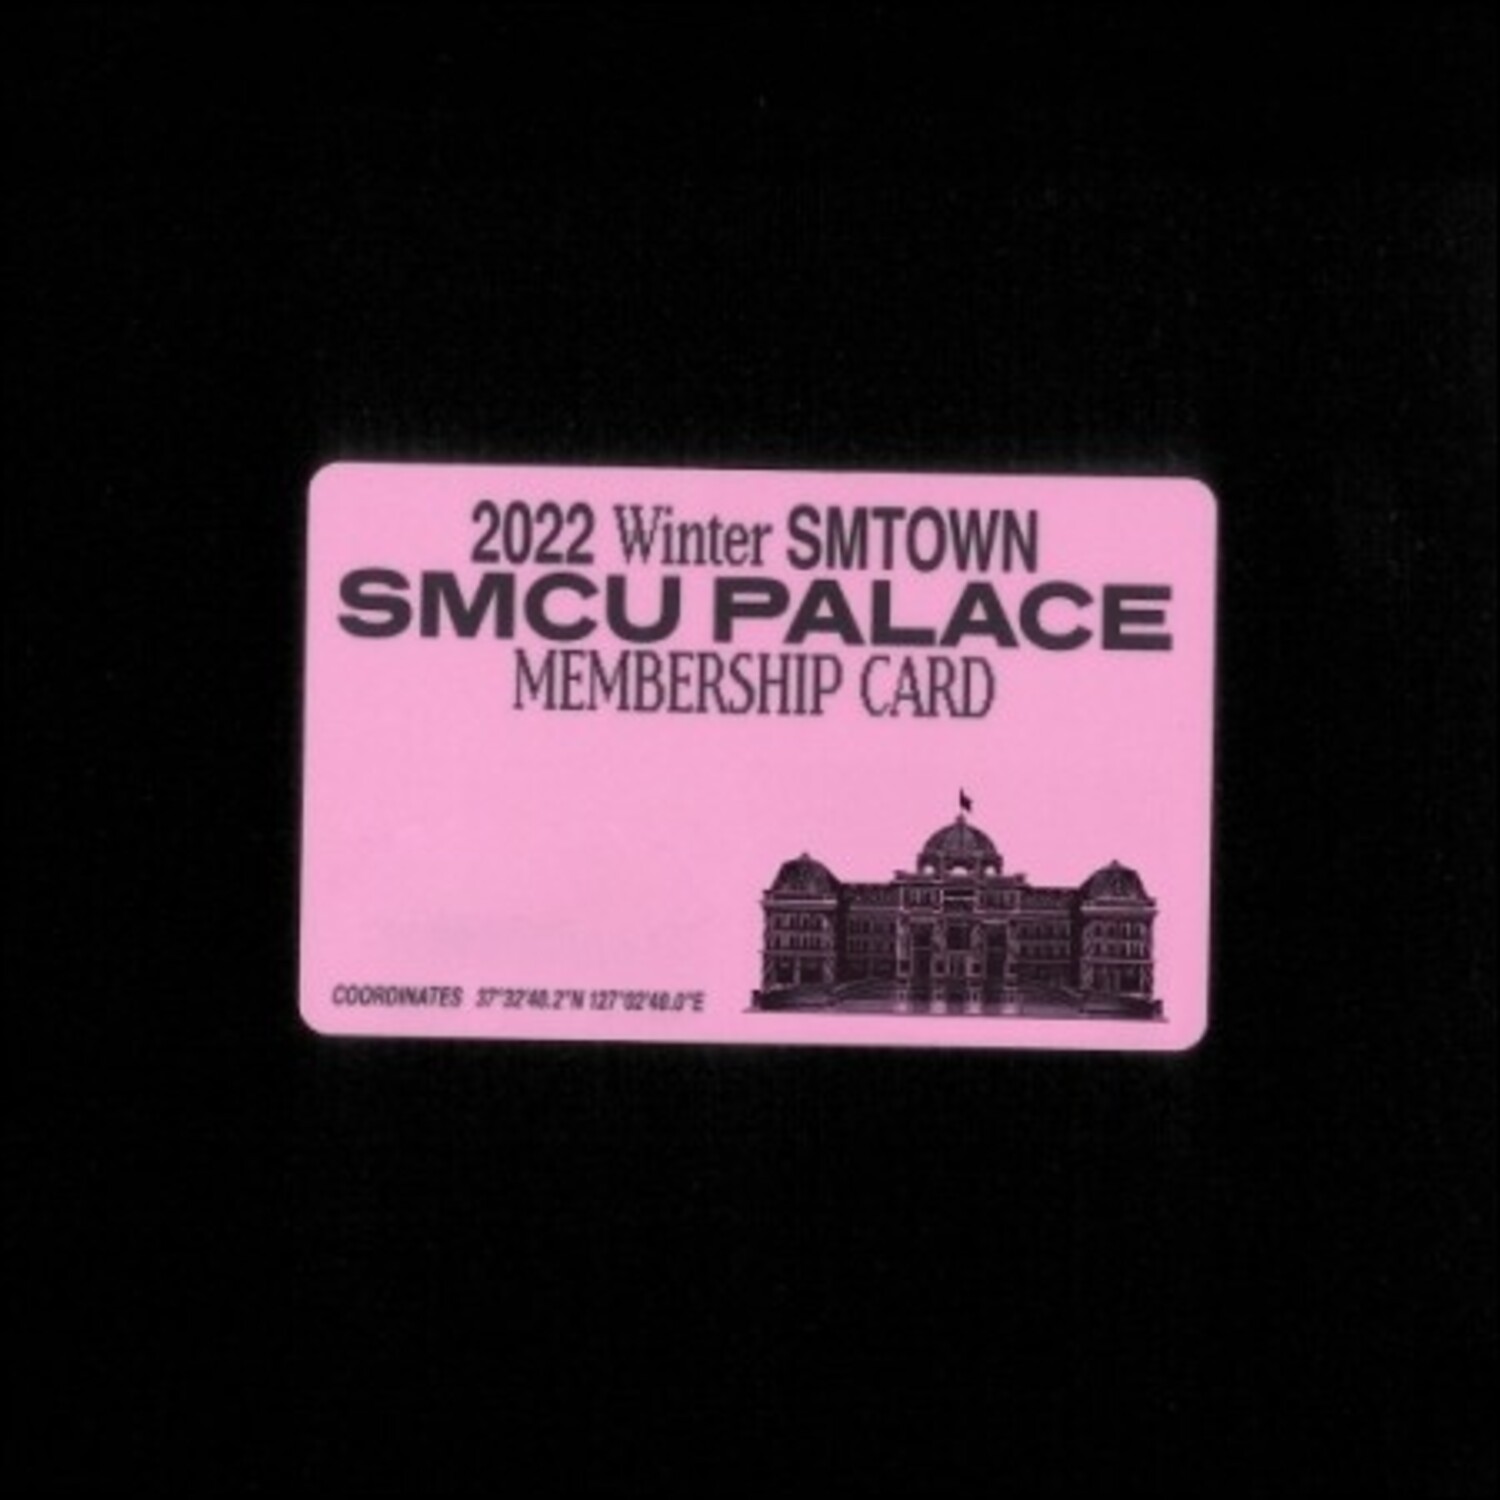 엑소(EXO)(시우민, 수호, 첸, 찬열, 카이, 세훈) - [2022 Winter SMTOWN : SMCU PALACE](GUEST. EXO) (Membership Card Ver.) (스마트앨범)